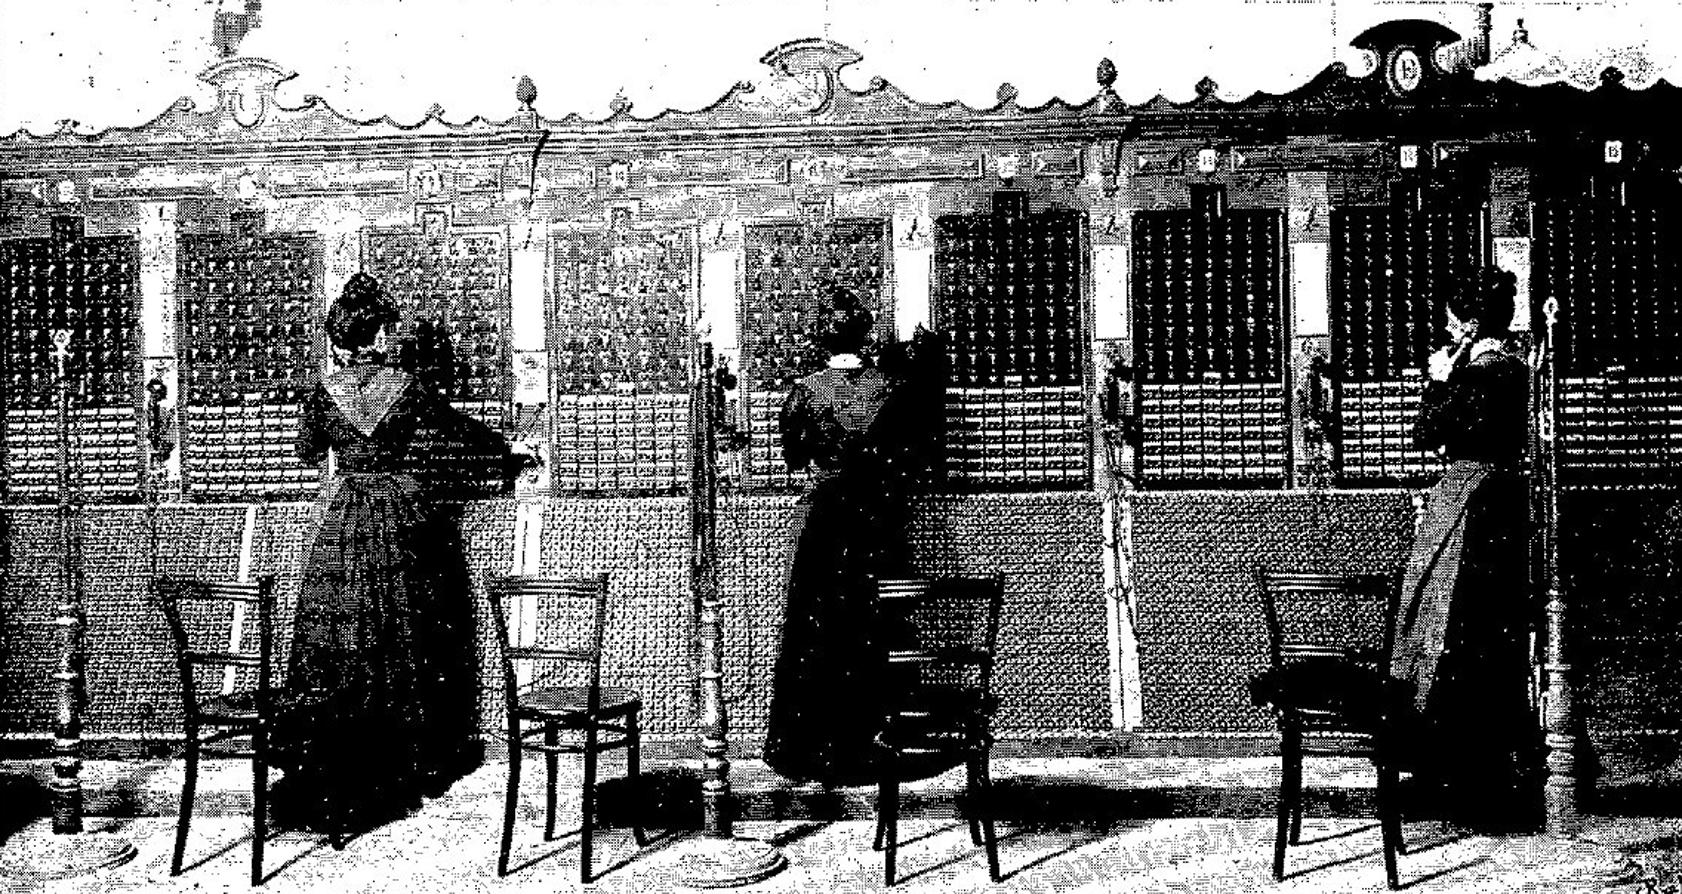 Operadoras de teléfonos en 1901. Revista Blanco y Negro
